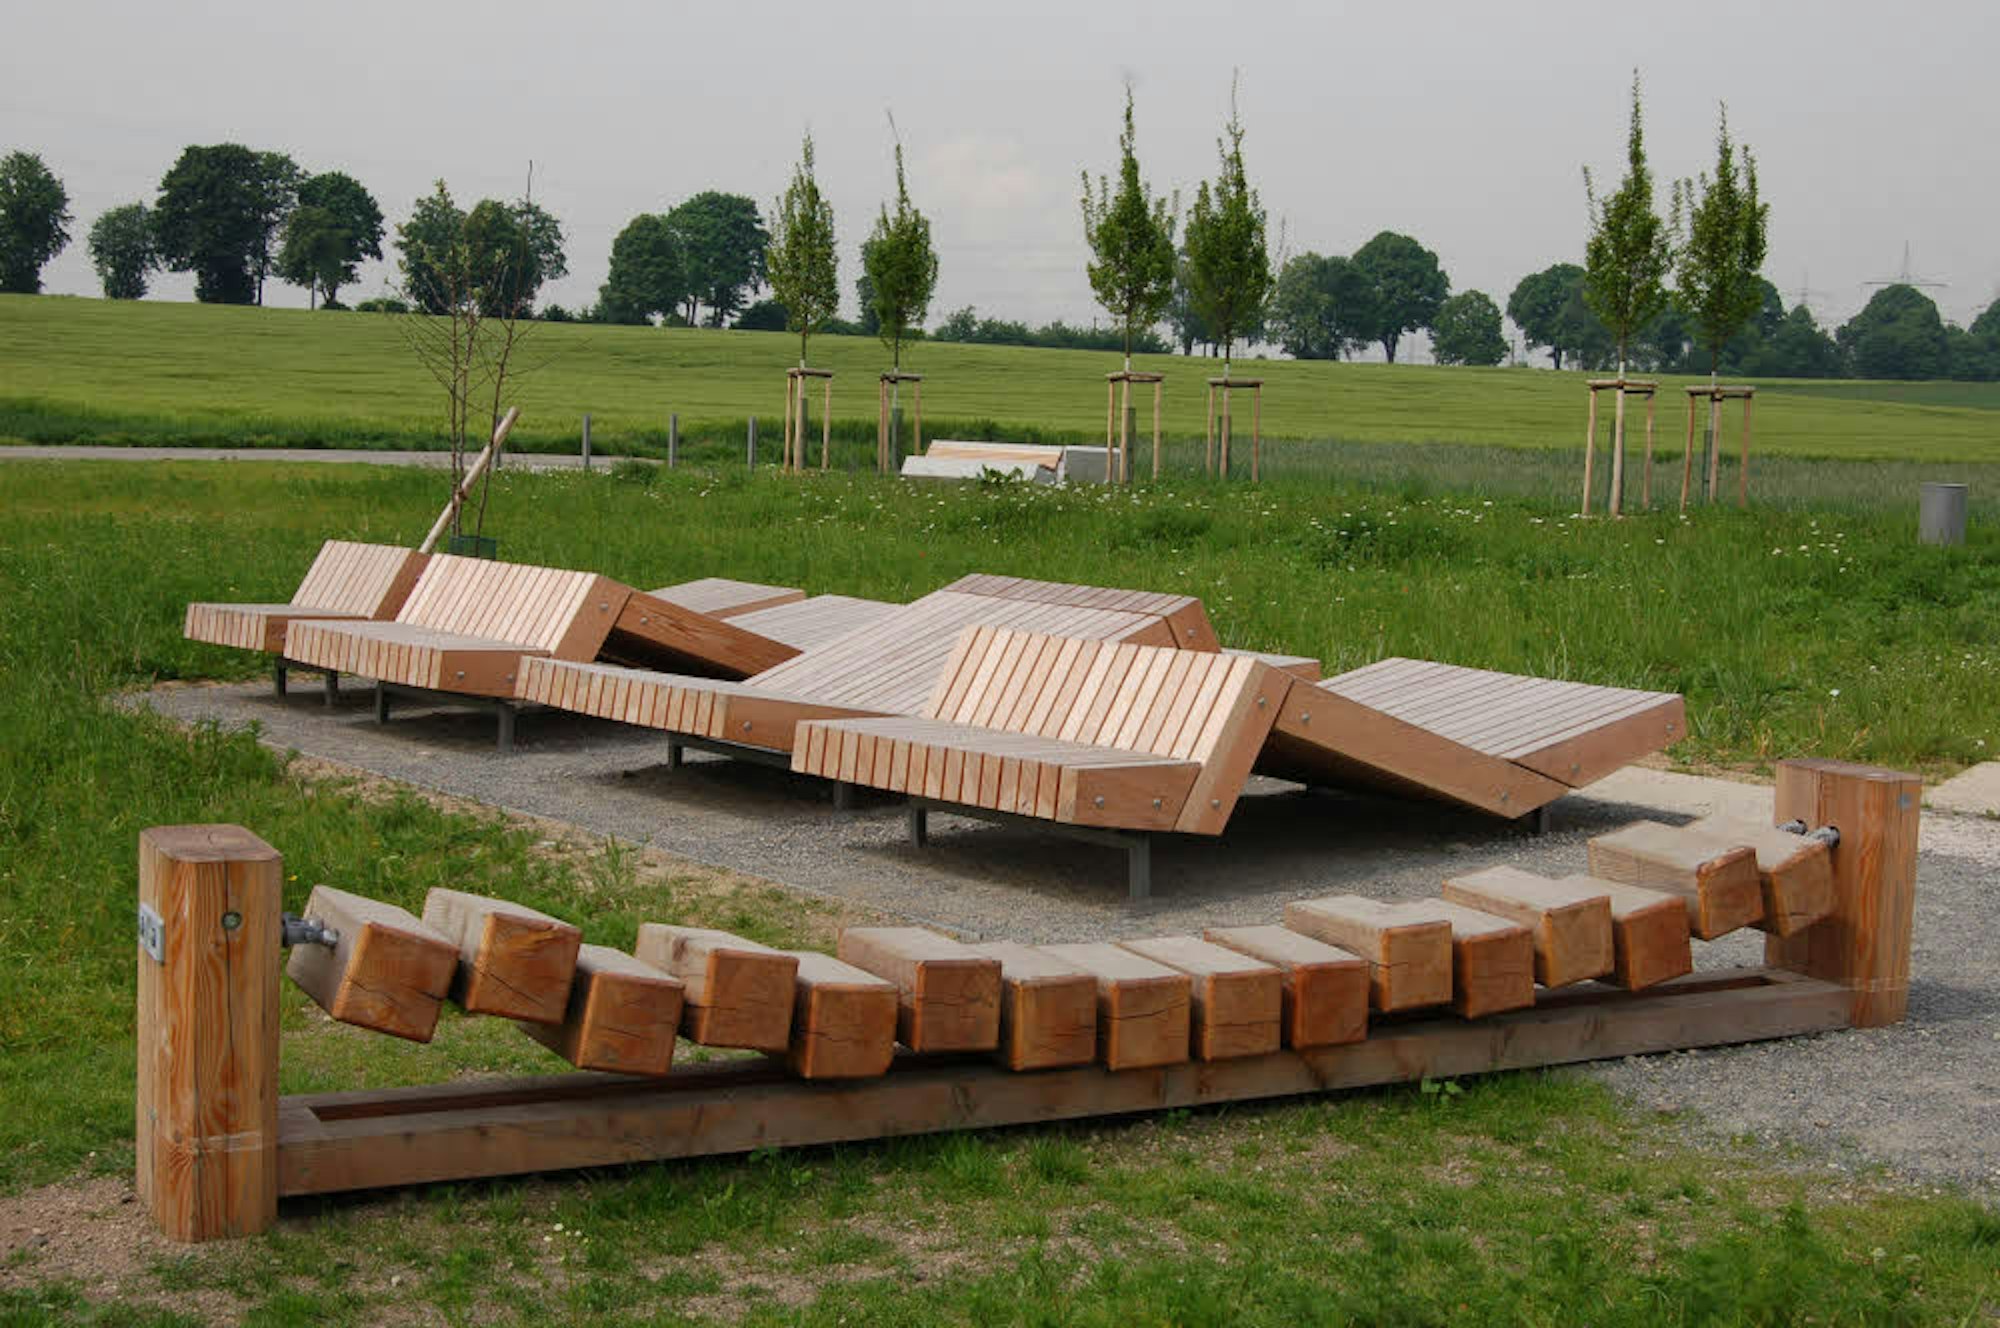 Vorbild Nordpark: Am Übergang in die Ackerlandschaft sind Landschaftslogen geplant mit Sitzmöbeln aus Holz. Sie sind als Rückzugsorte geplant.